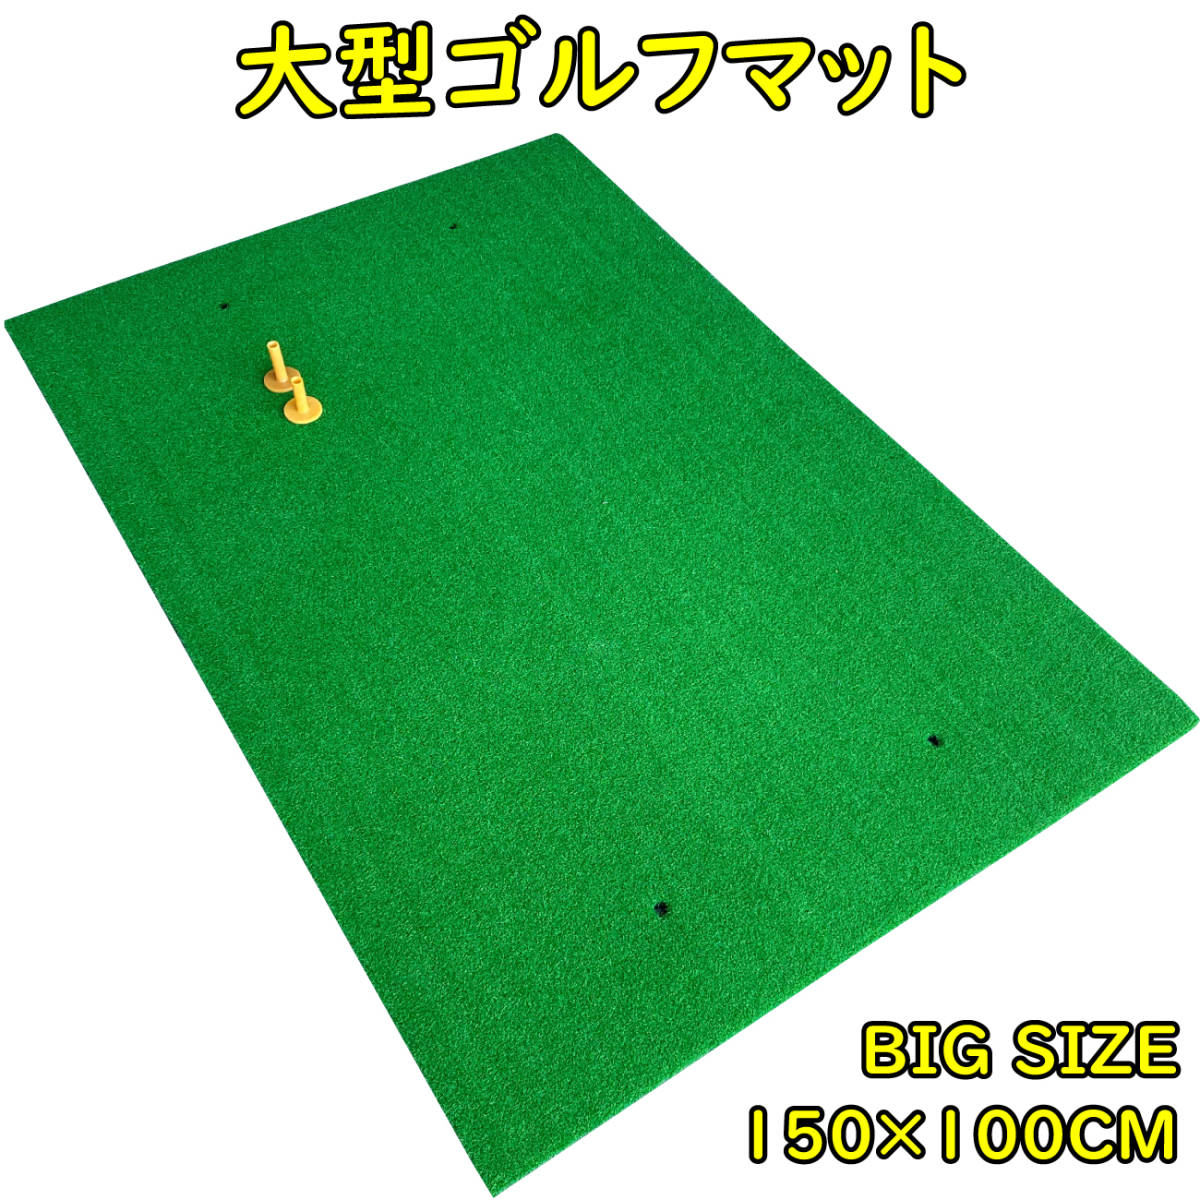 大型100×150CM ゴルフ練習マット ゴルフマット ショットマット スイング練習人工芝 大型マット 大型練習用マット ゴルフ 練習 マット 13